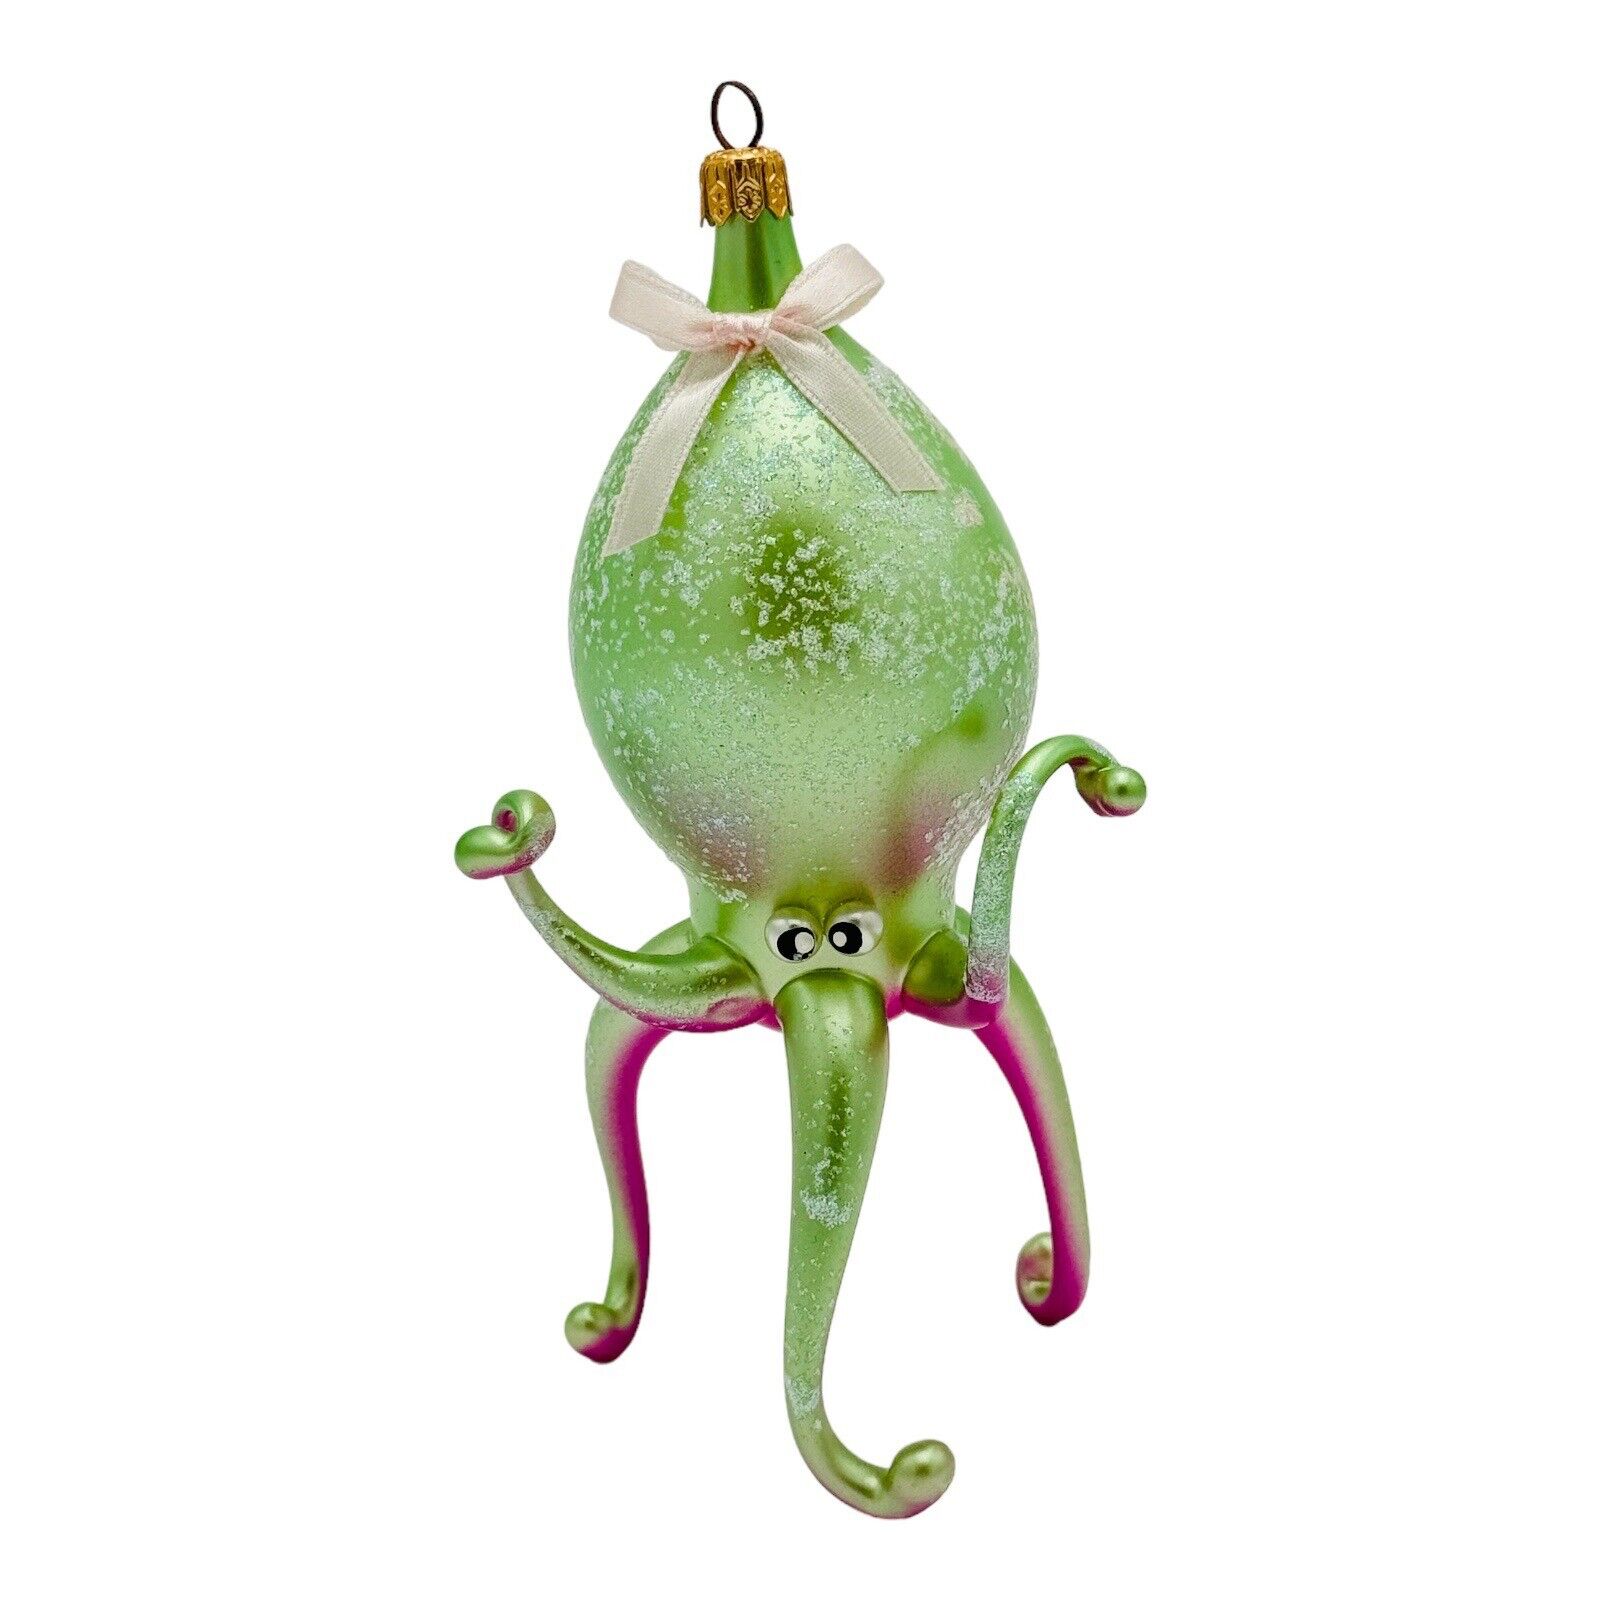 Soffieria De Carlini Italian Octopus Squid Glass Ornament 6” Green Purple RARE